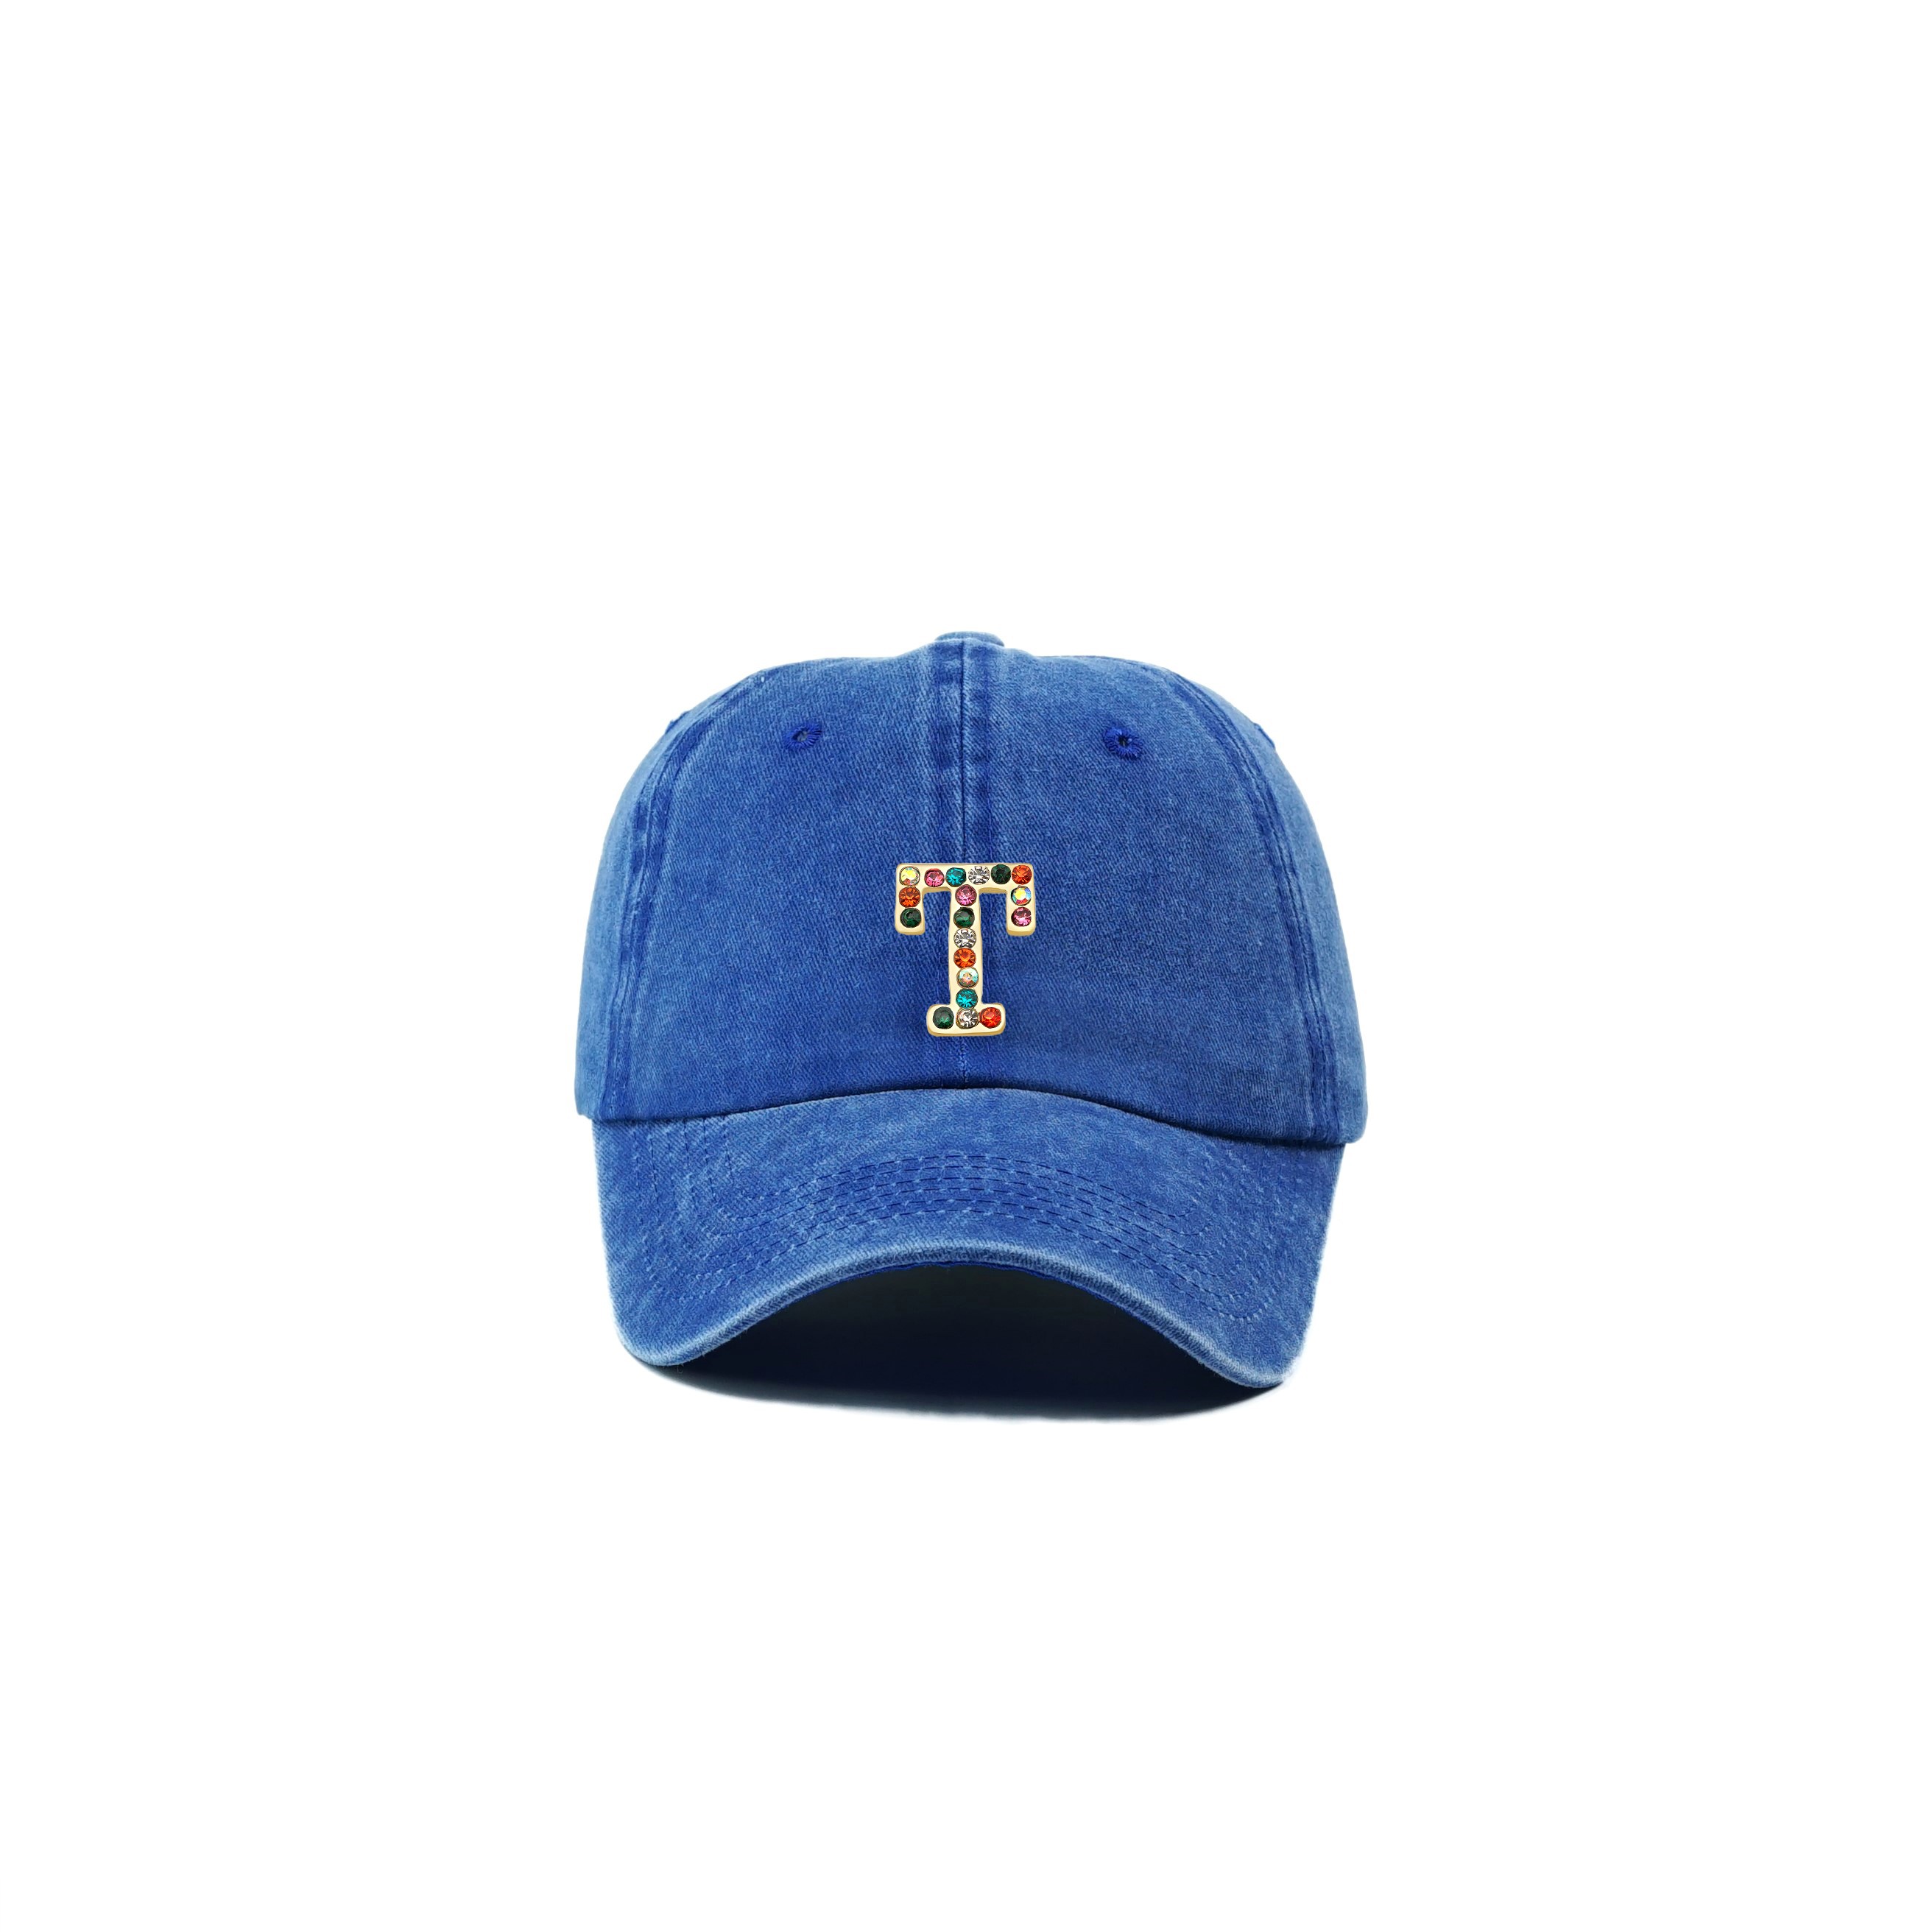 Twingold Kişiye Özel Yıkamalı Kep Şapka - Saks Mavisi